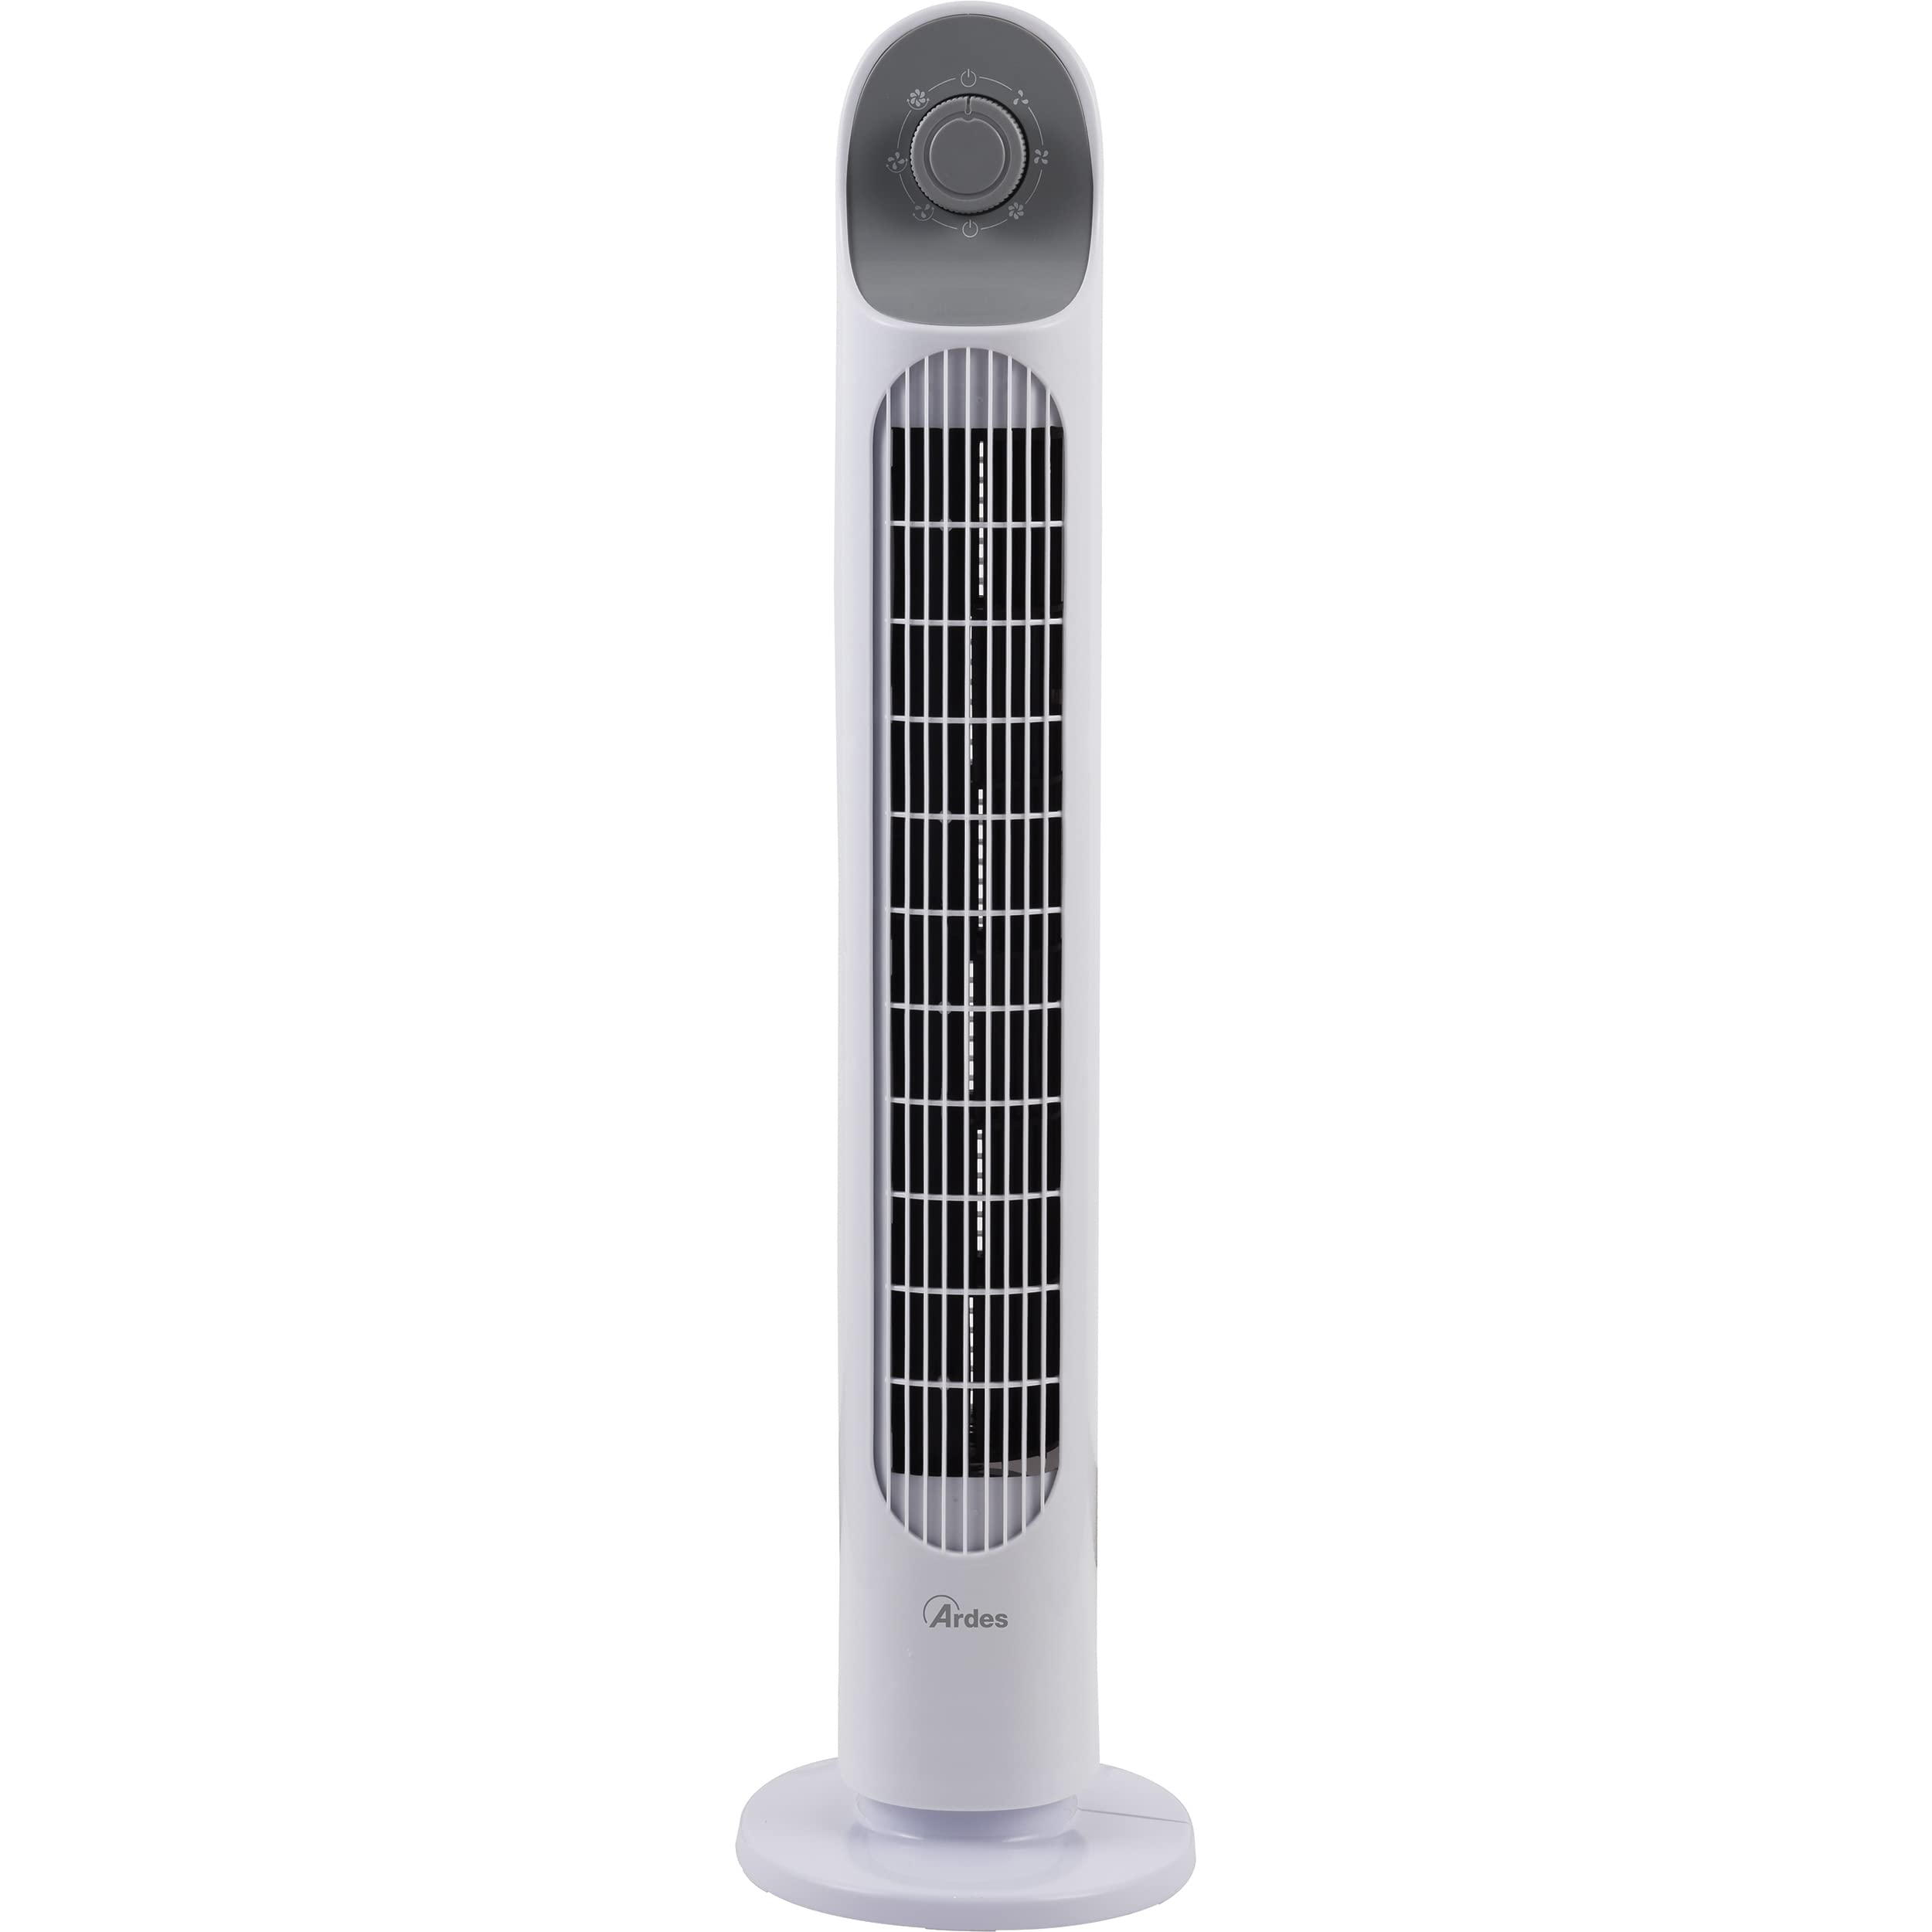 ARDES - Vertikalventilator Höhe 81 cm mit 3 Intensitäten und automatischer Oszillation des Turms, für Boden oder Tisch, Turmventilator weiß AR5T800